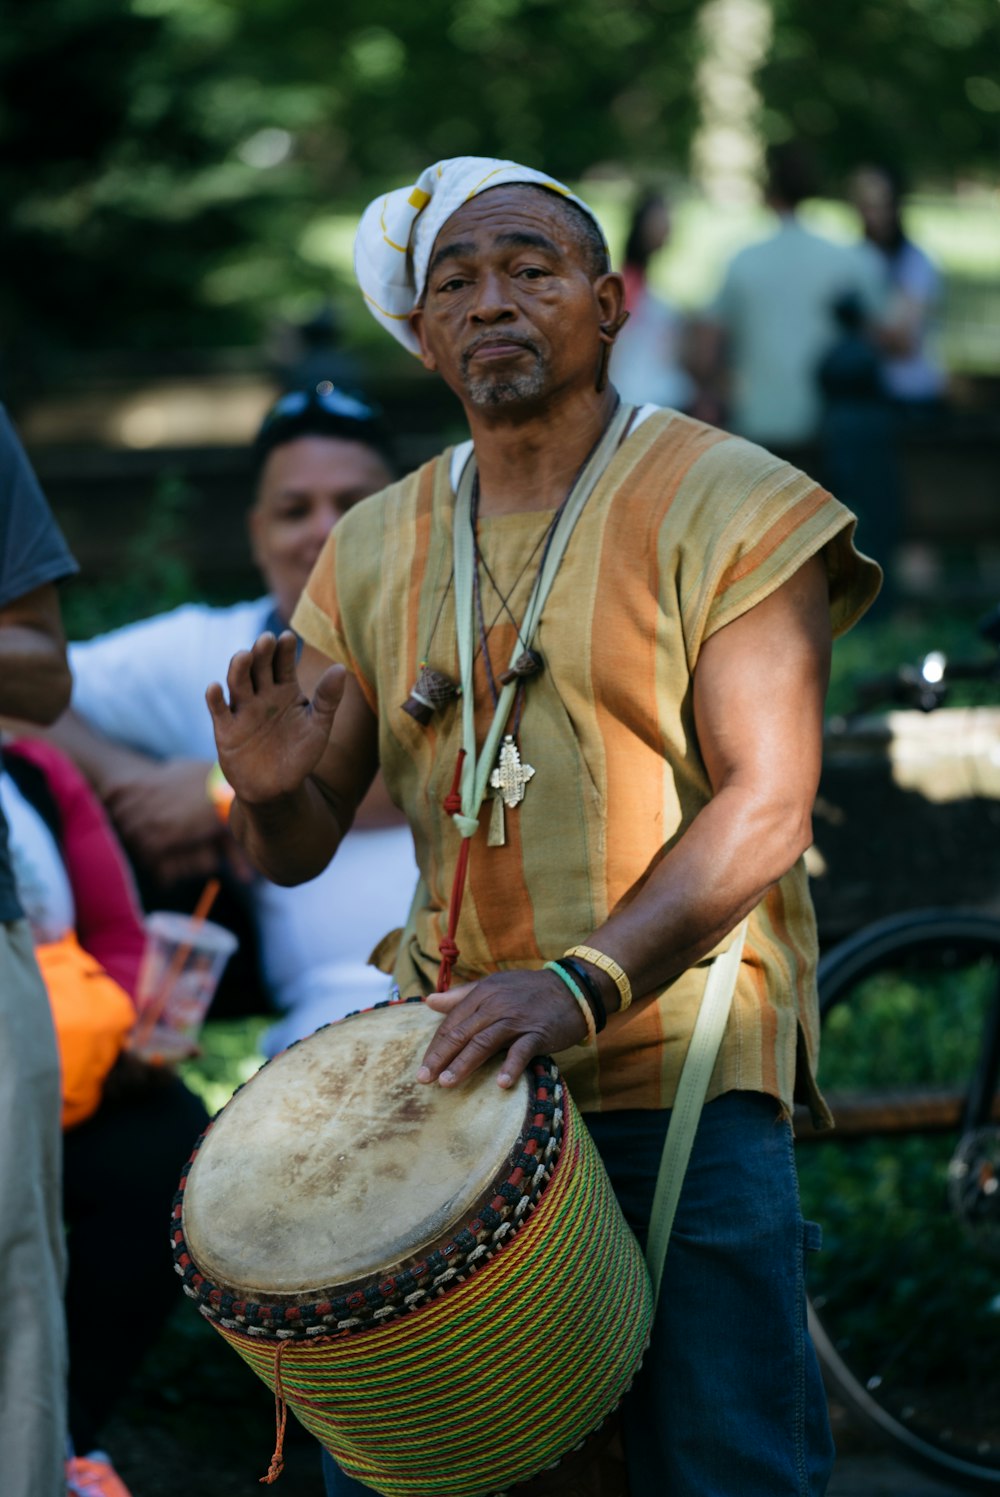 homme jouant du tambour à main